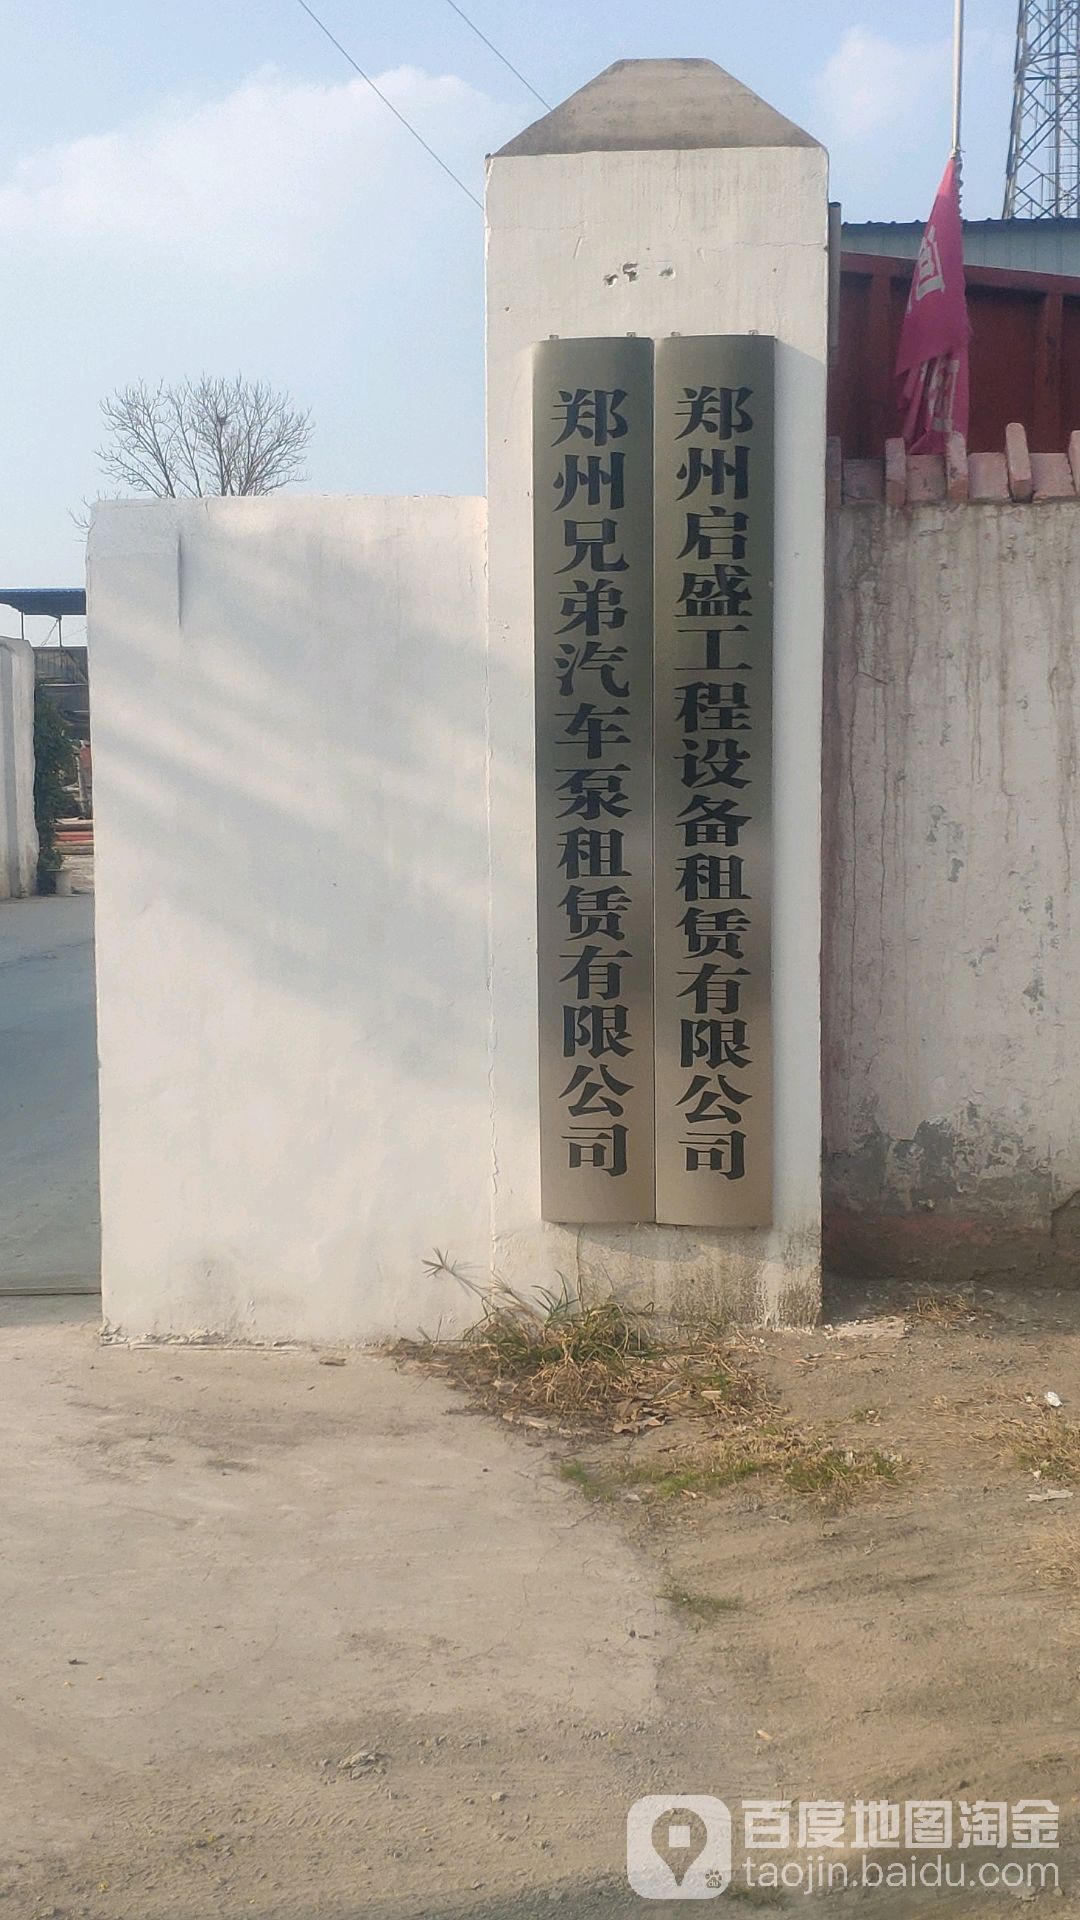 新郑市和庄镇郑州兄弟汽车泵租赁有限公司